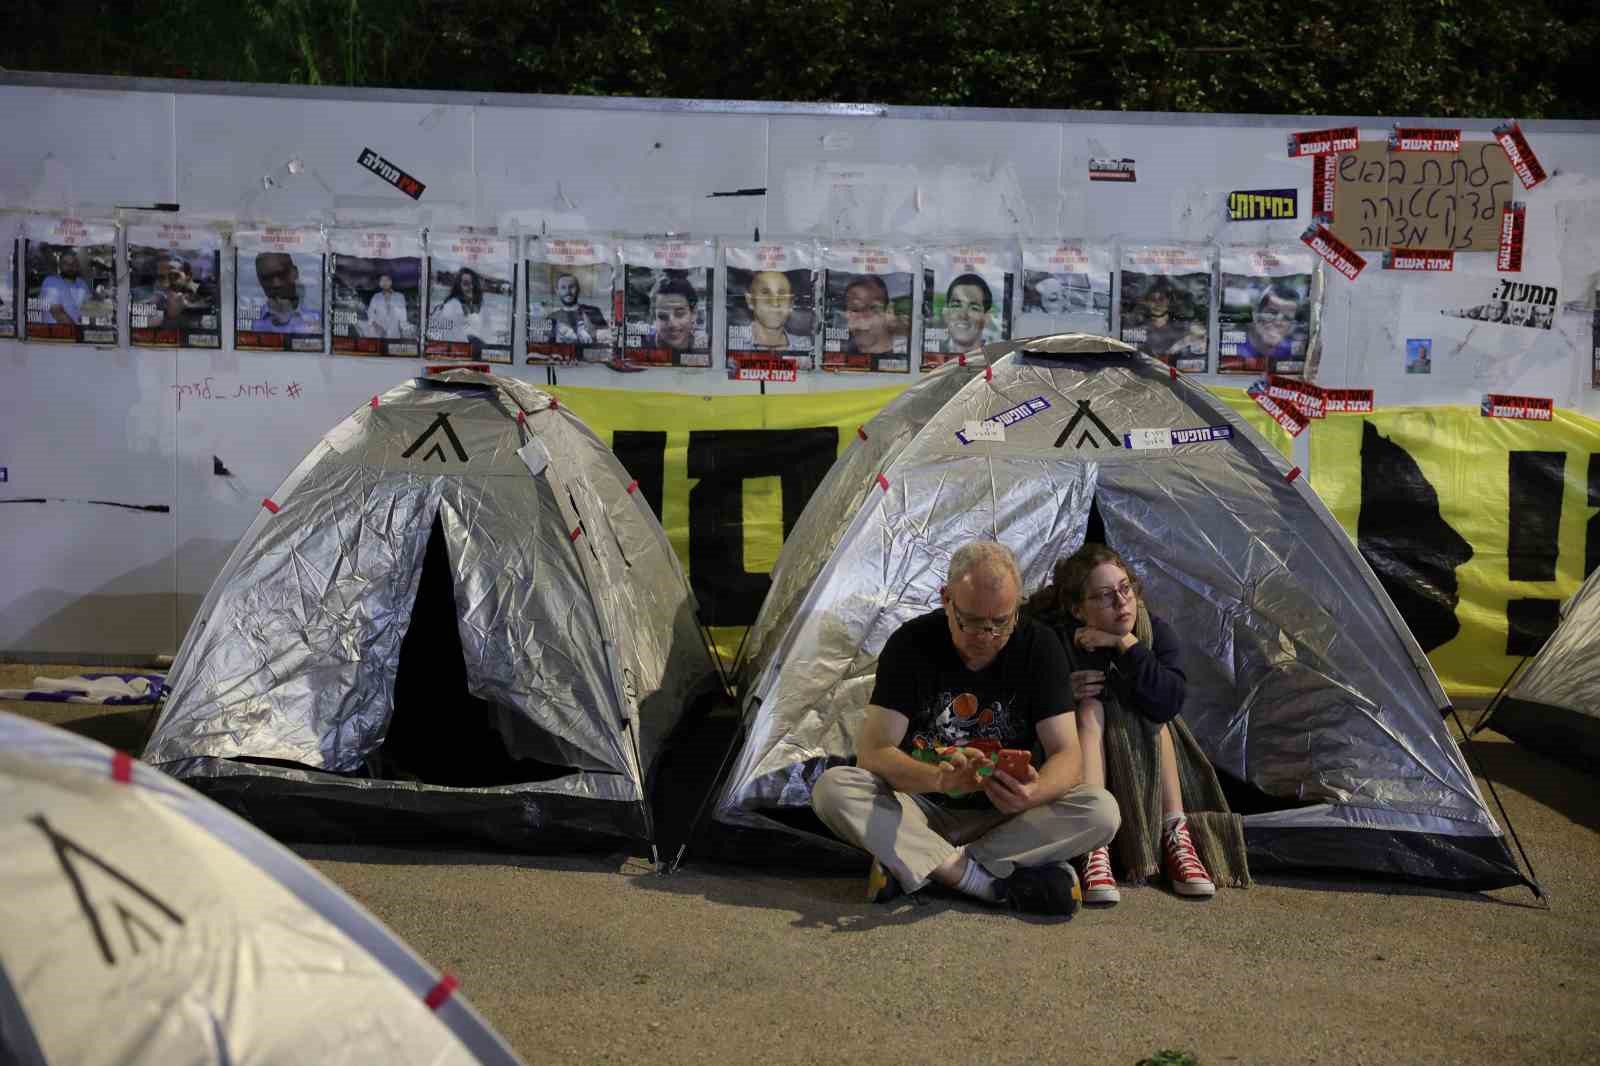 İsrail’de göstericiler parlamentonun önüne 100’den fazla çadır kurdu
